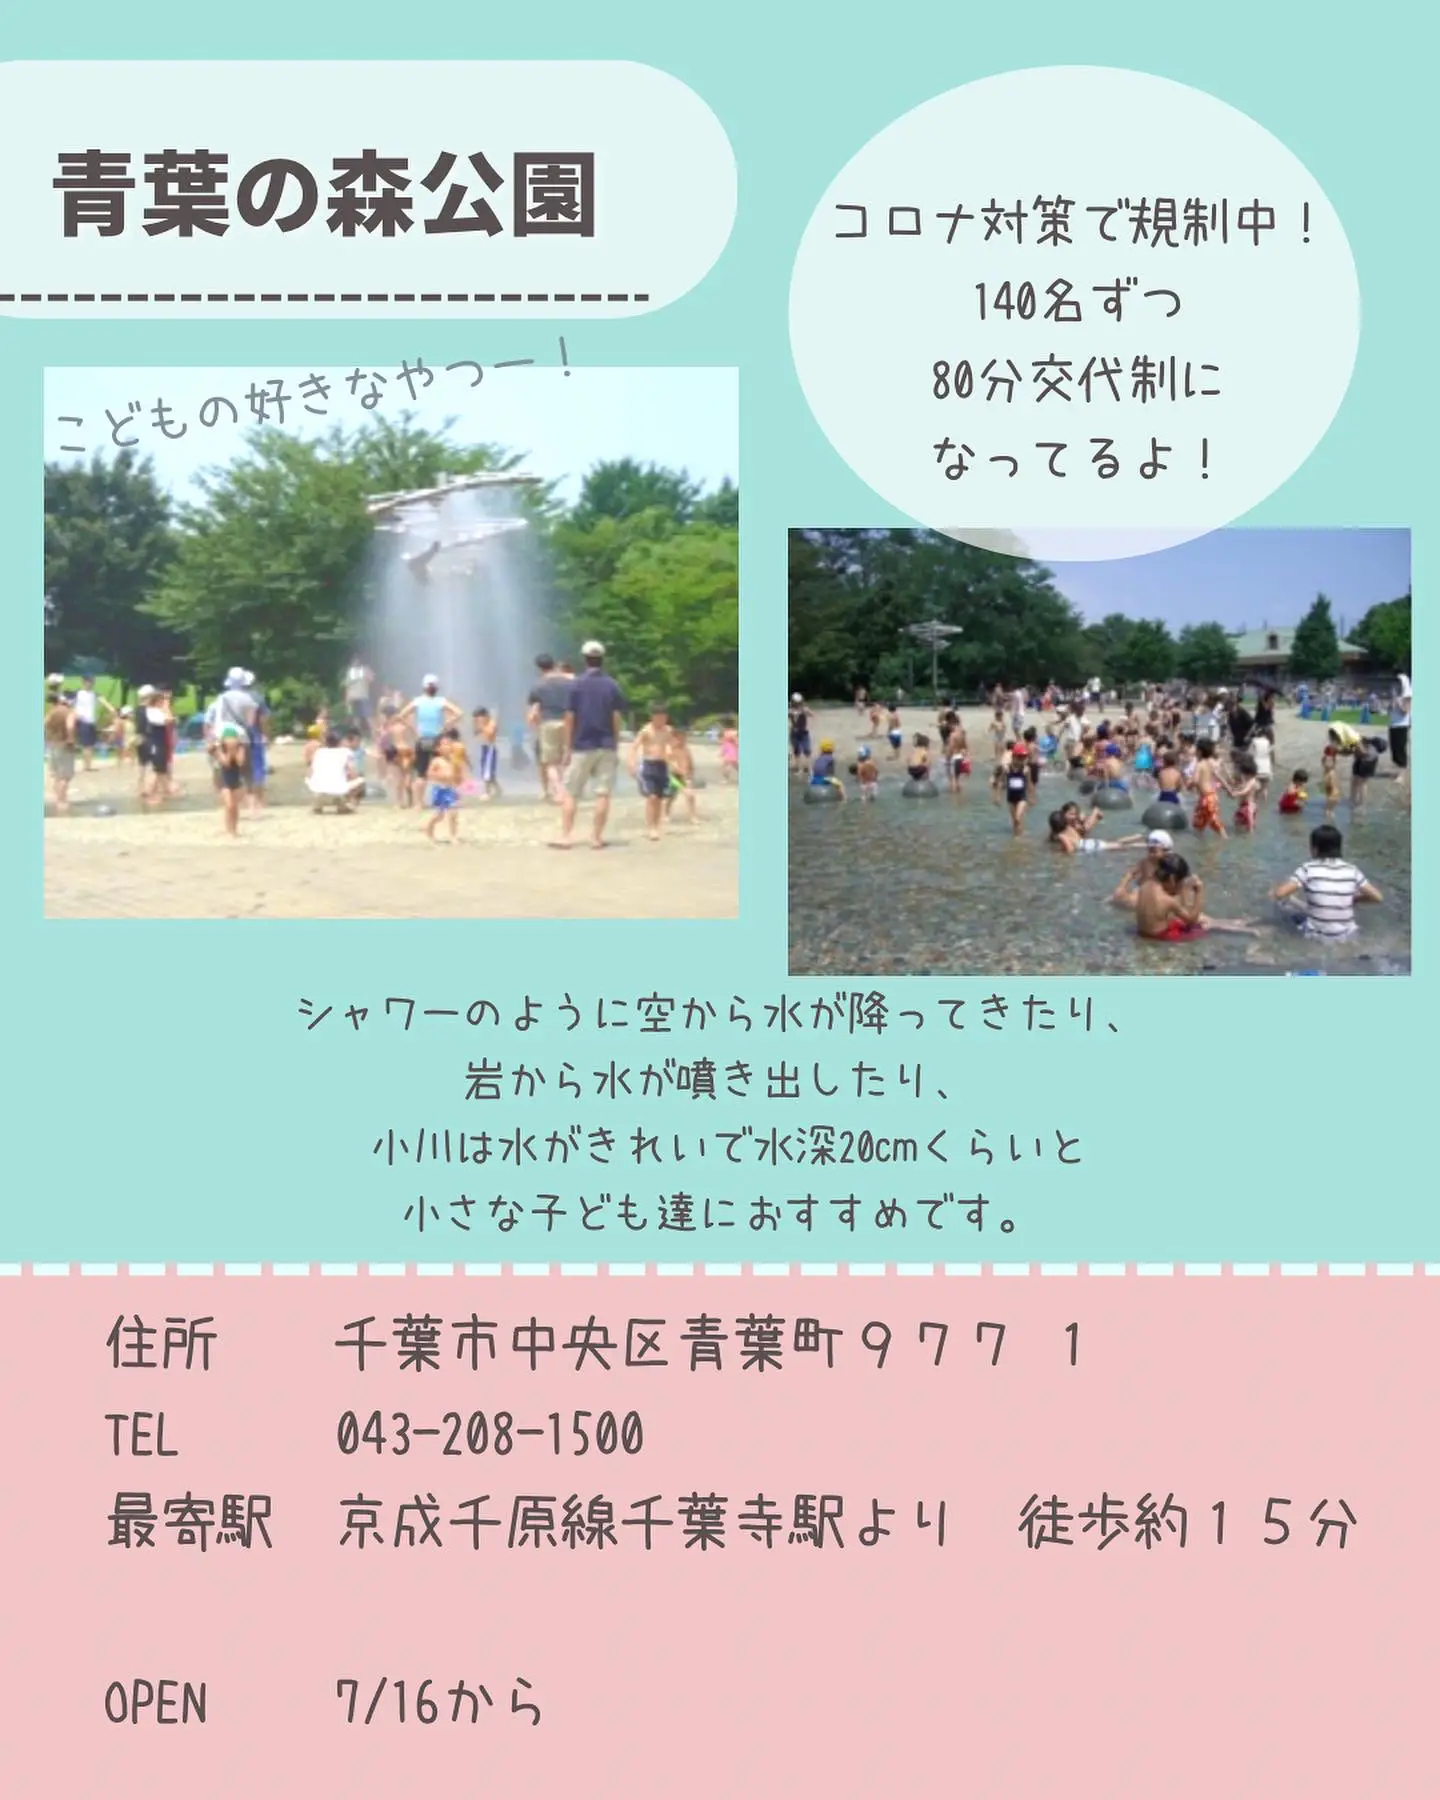 【千葉県】無料の水遊びスポットまとめの画像 (3枚目)